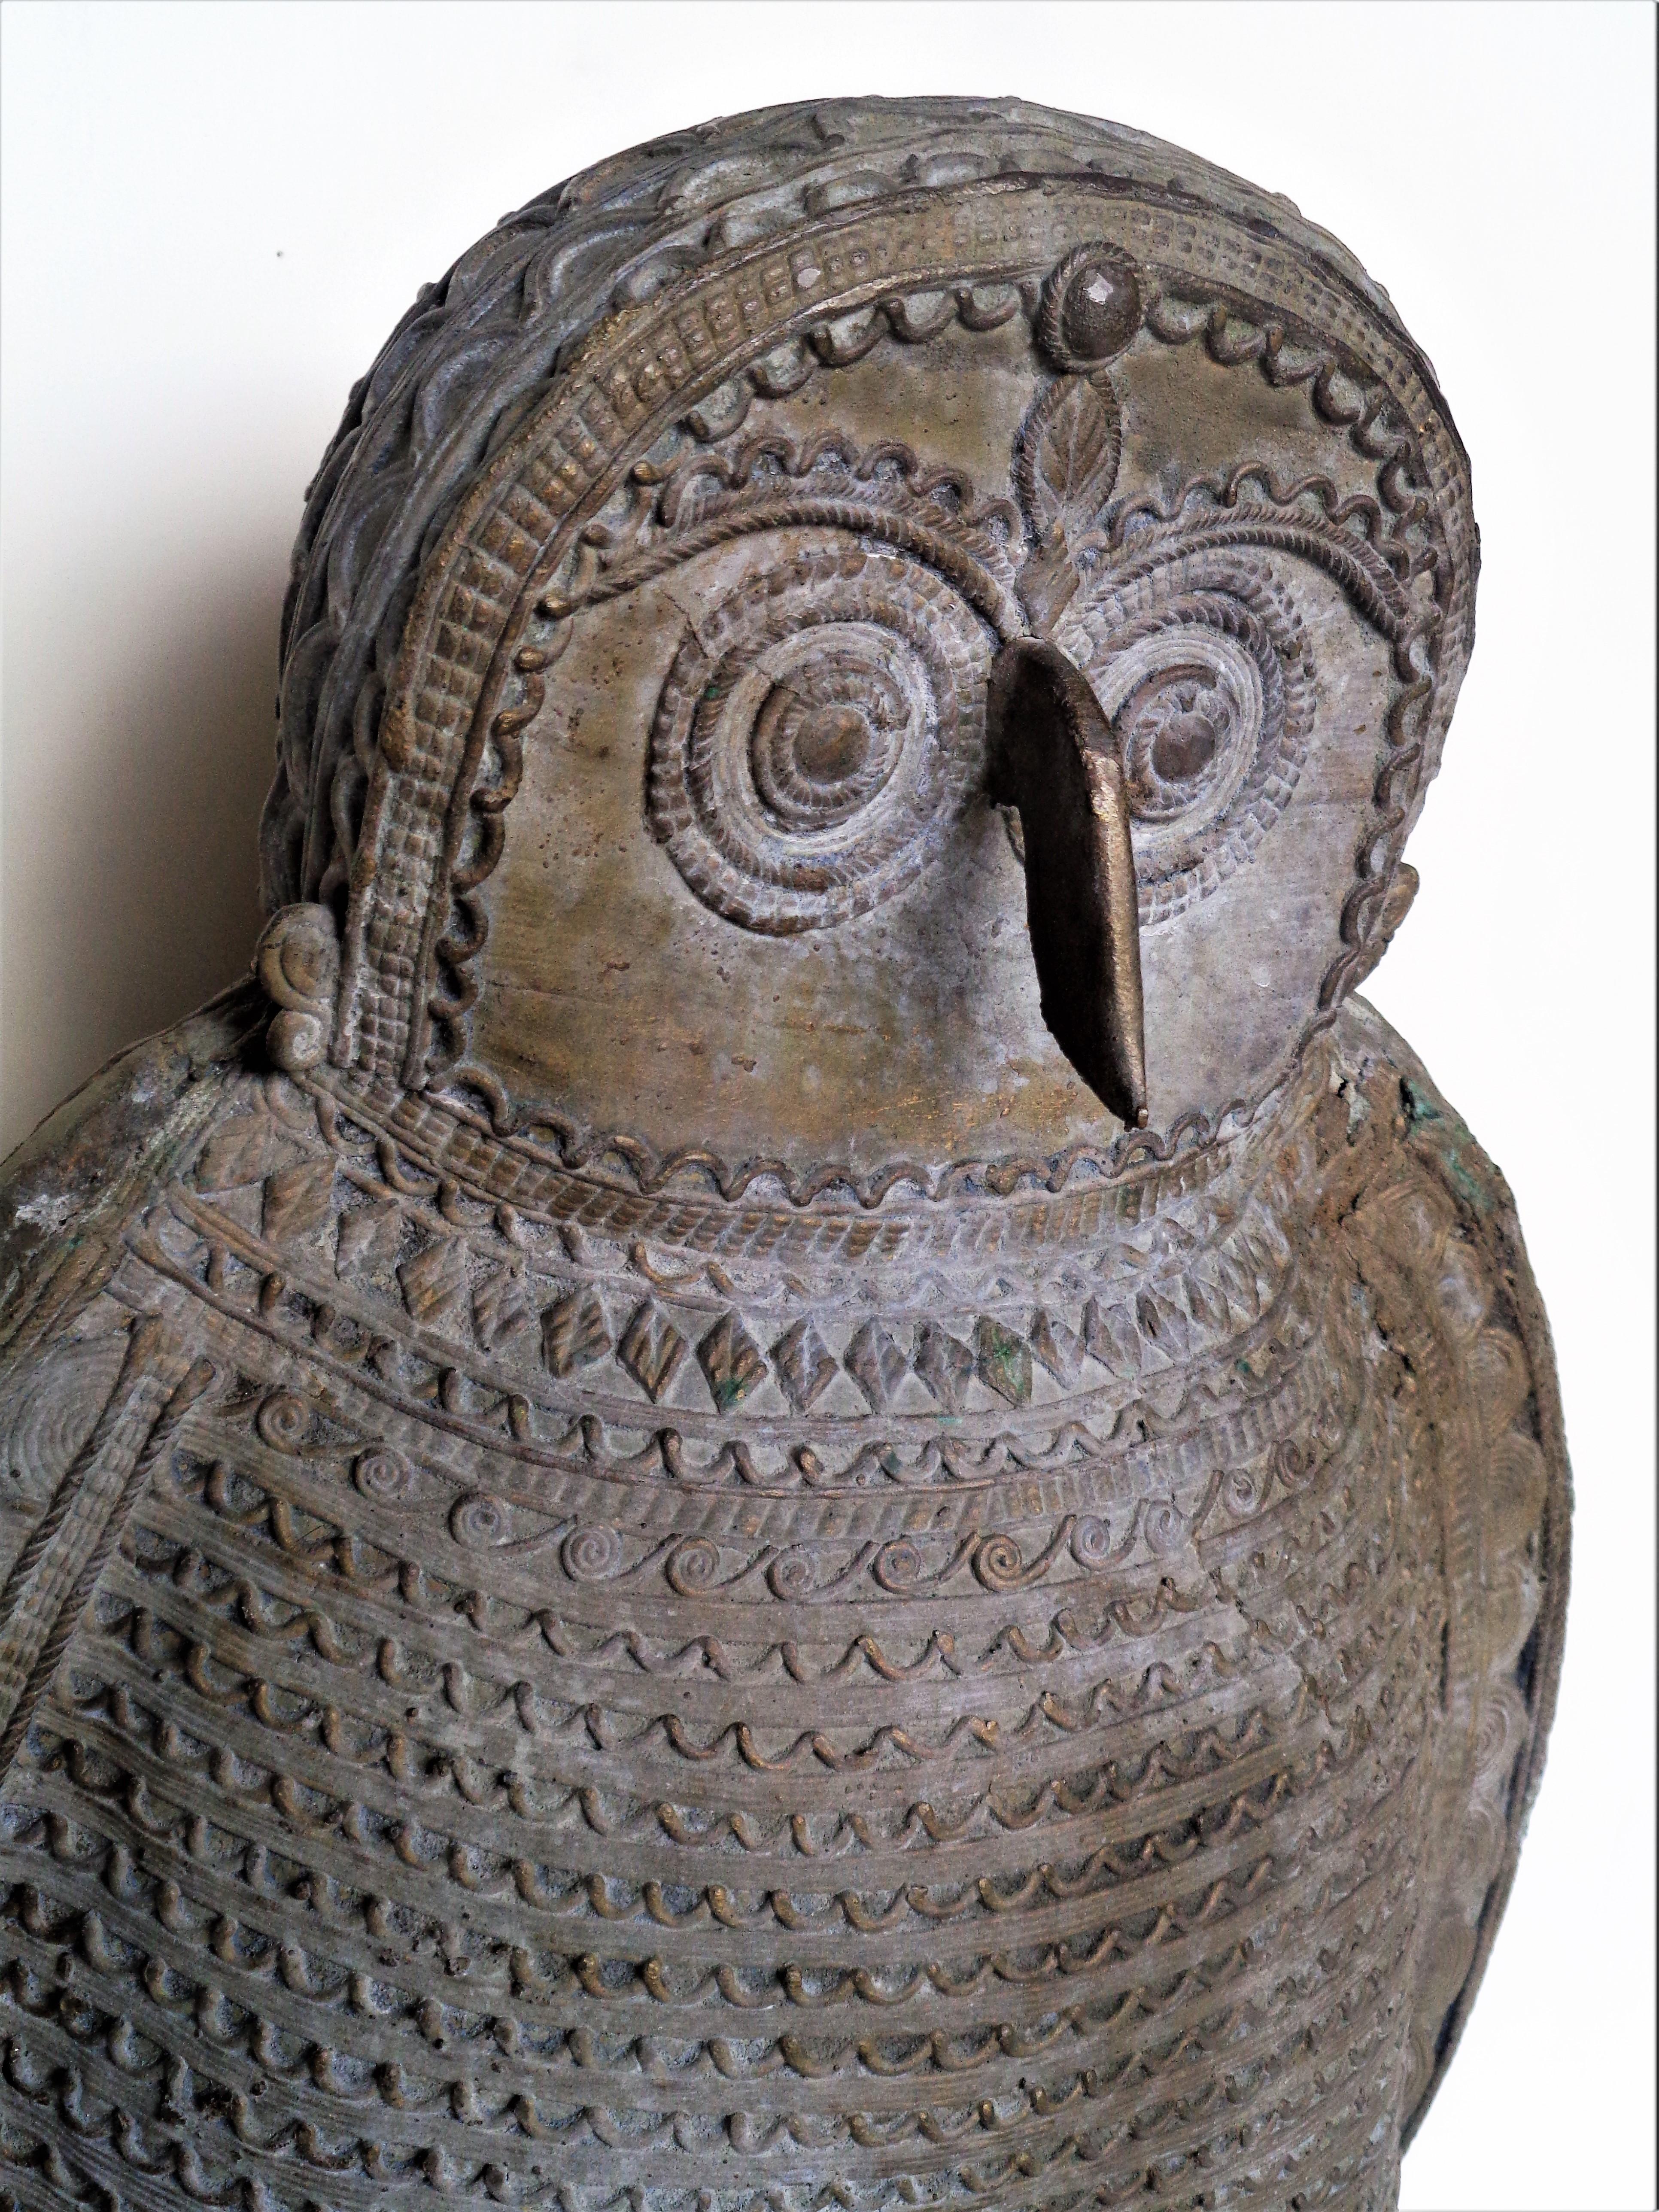    Large Zinc Metal Owl Sculpture, Circa 1900 8